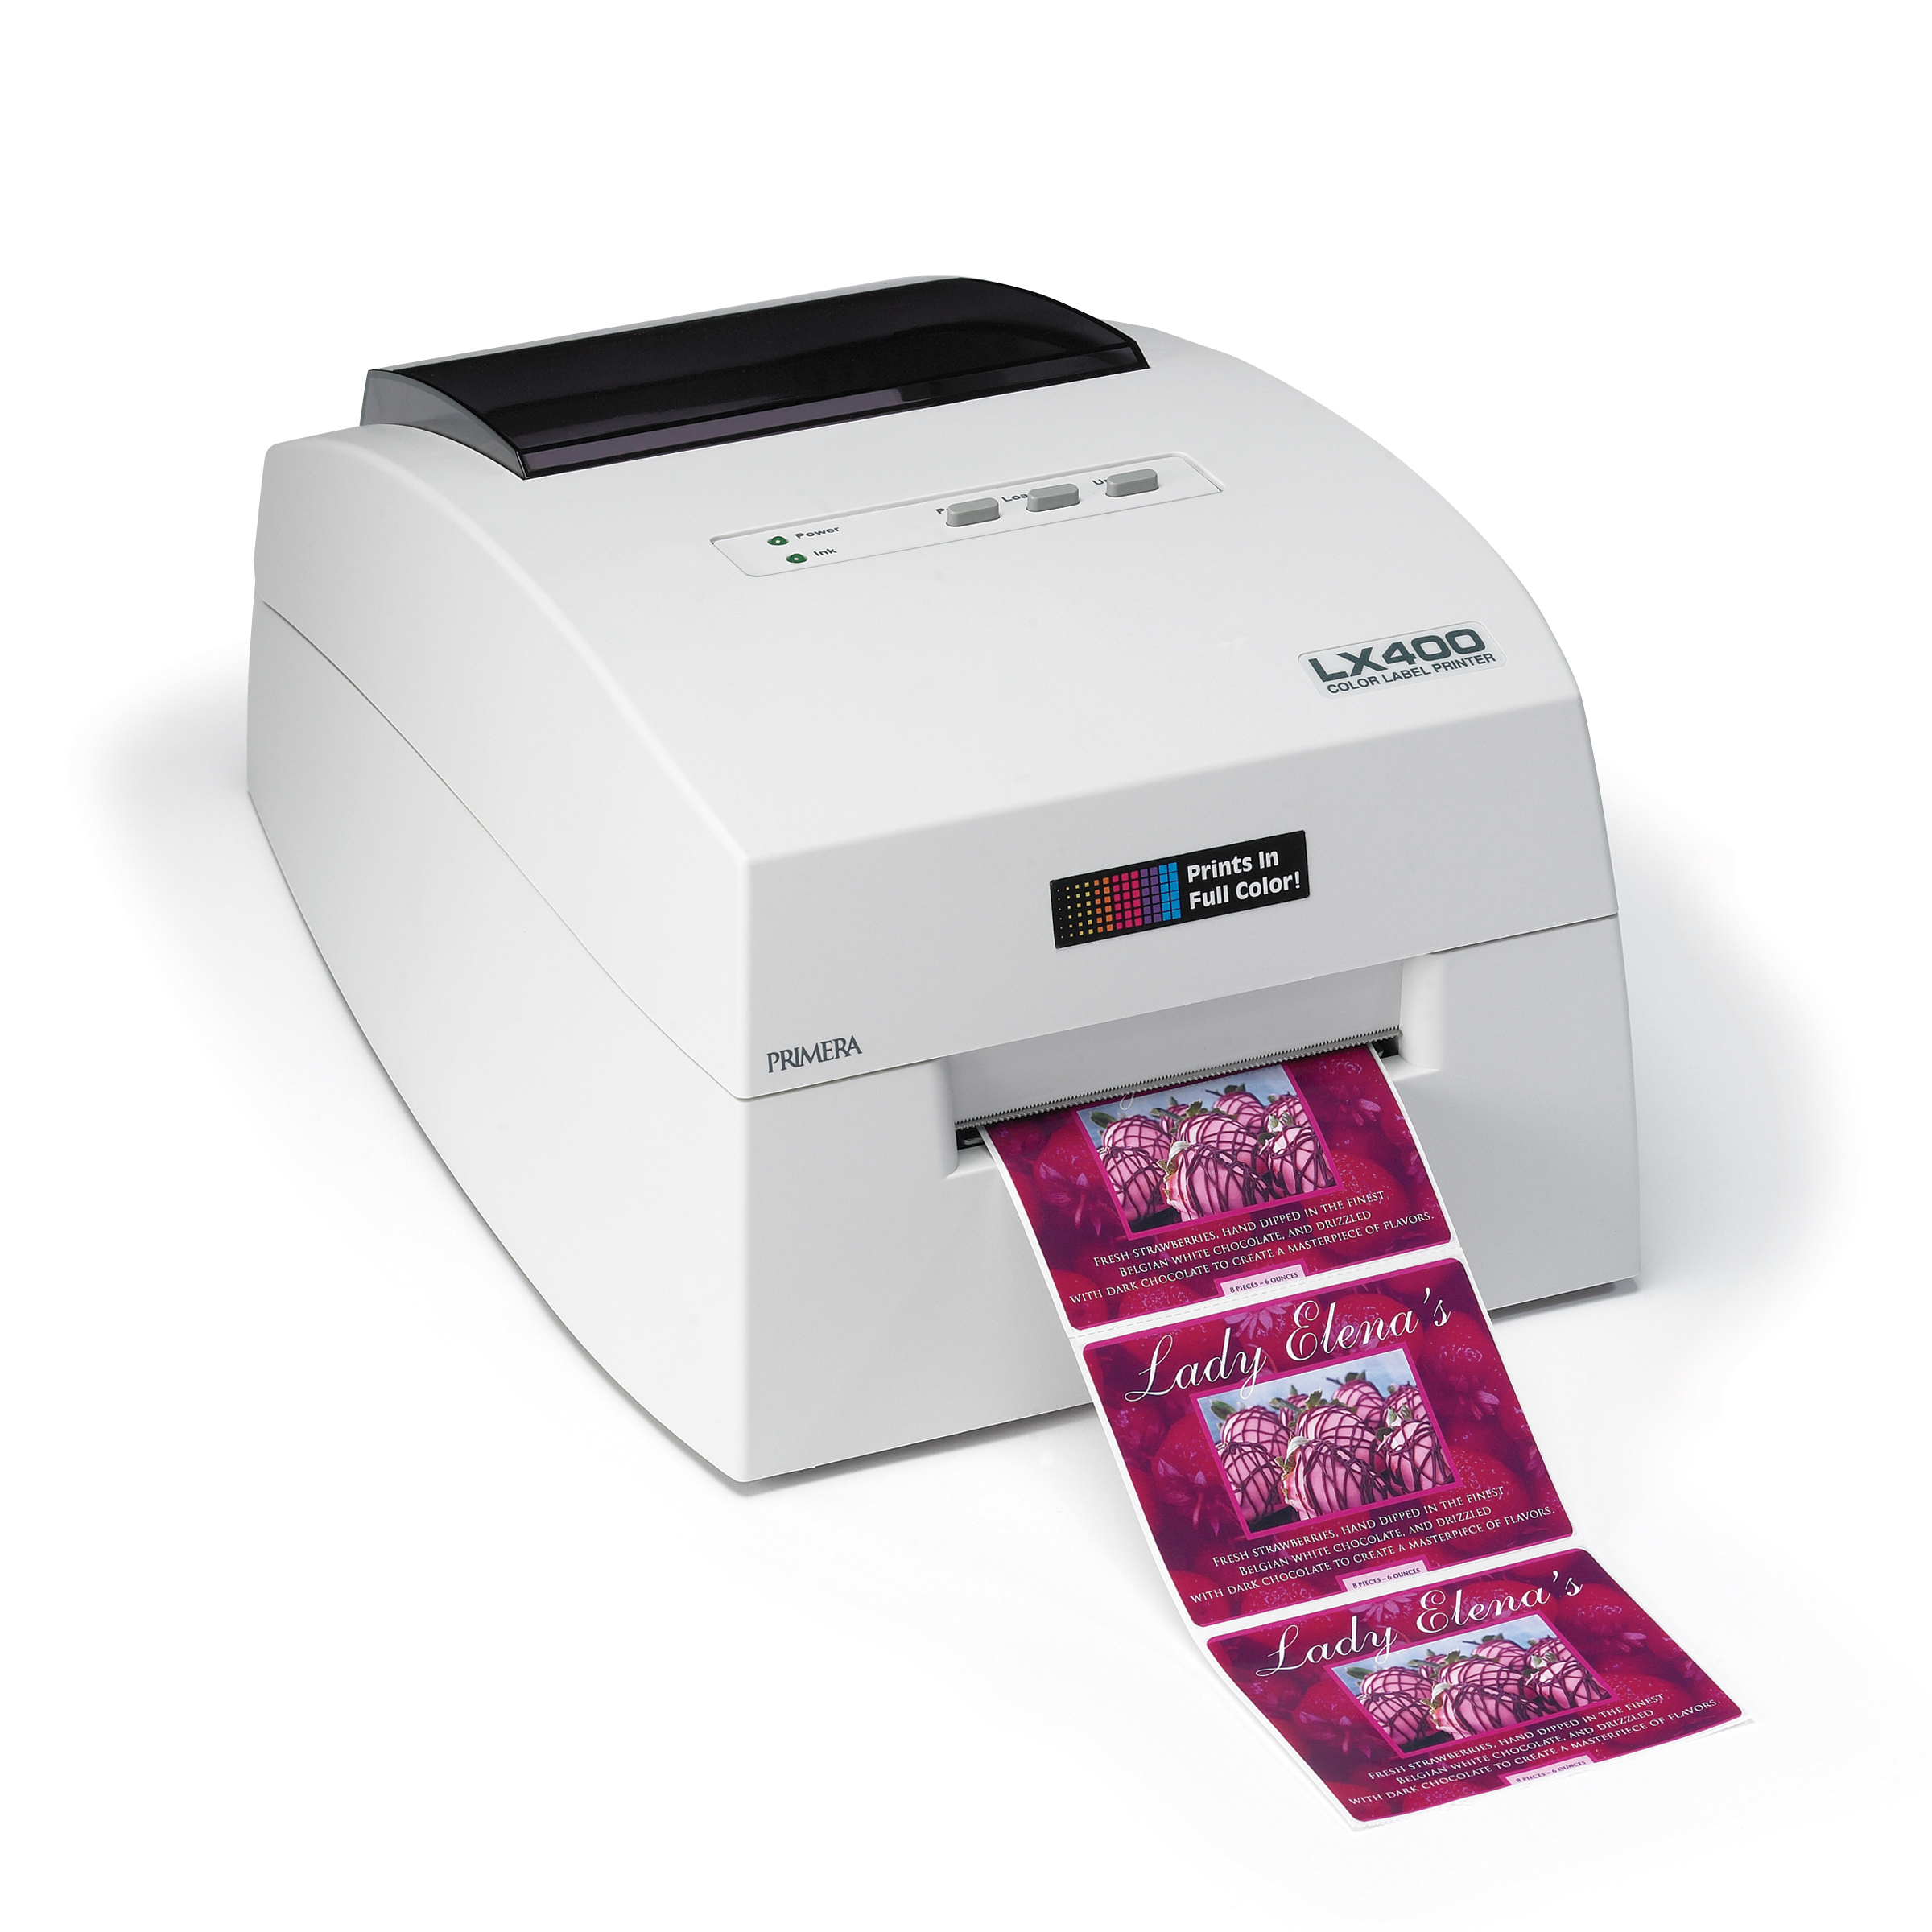 Primera LX400 color label printer